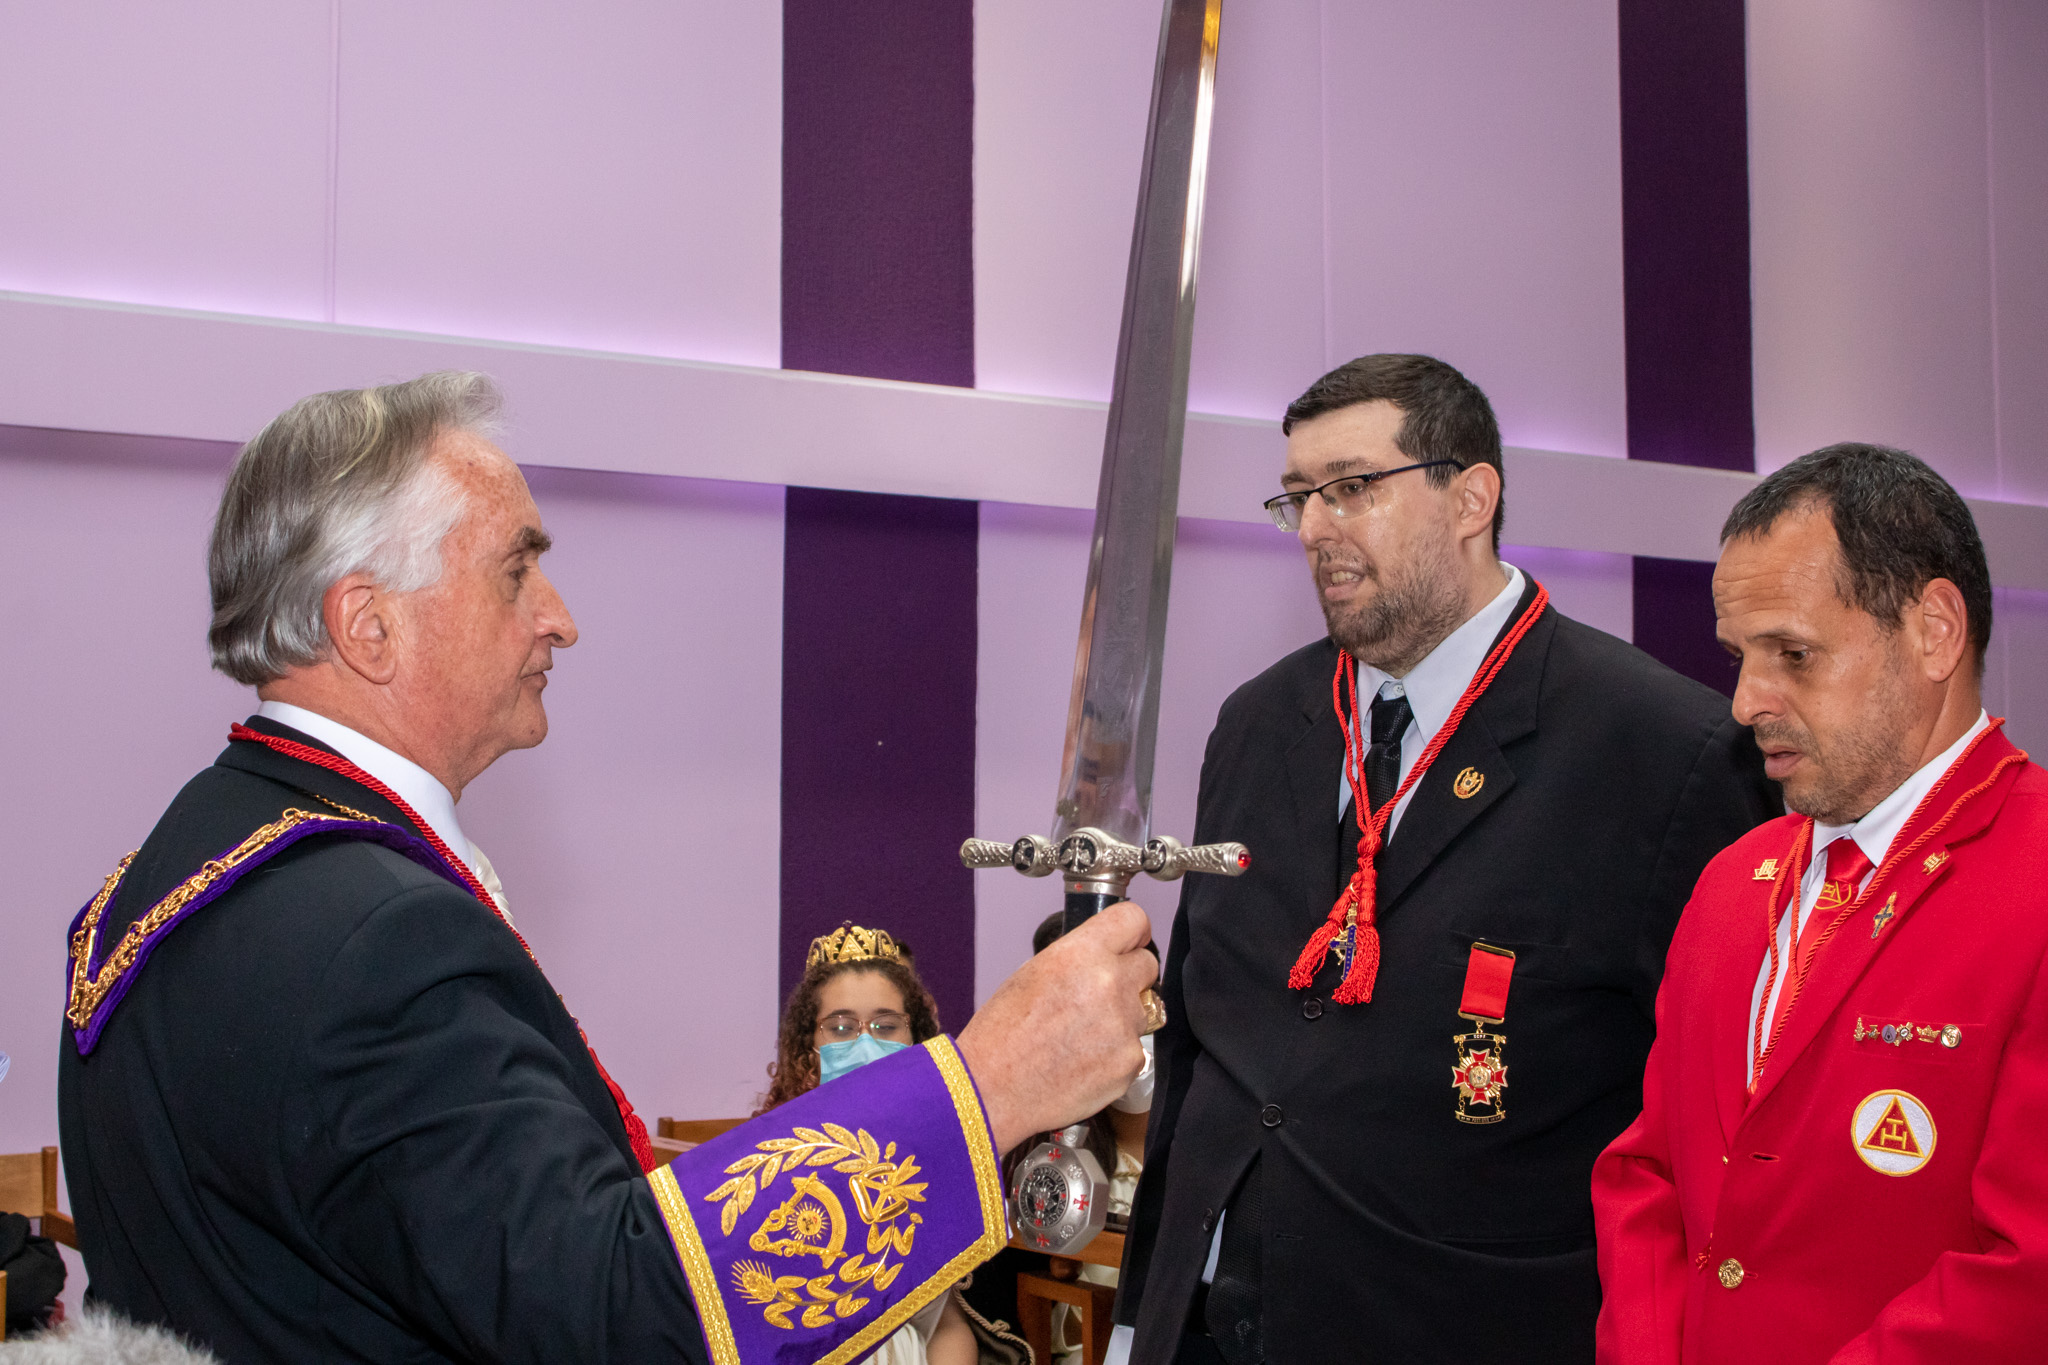 Empunhando a espada, o próprio Sardone, com a aquiescência dos Oficiais do Conselho da Legião de Honra, pessoalmente conferiu a Legião de Honra a Moreira e Schein.